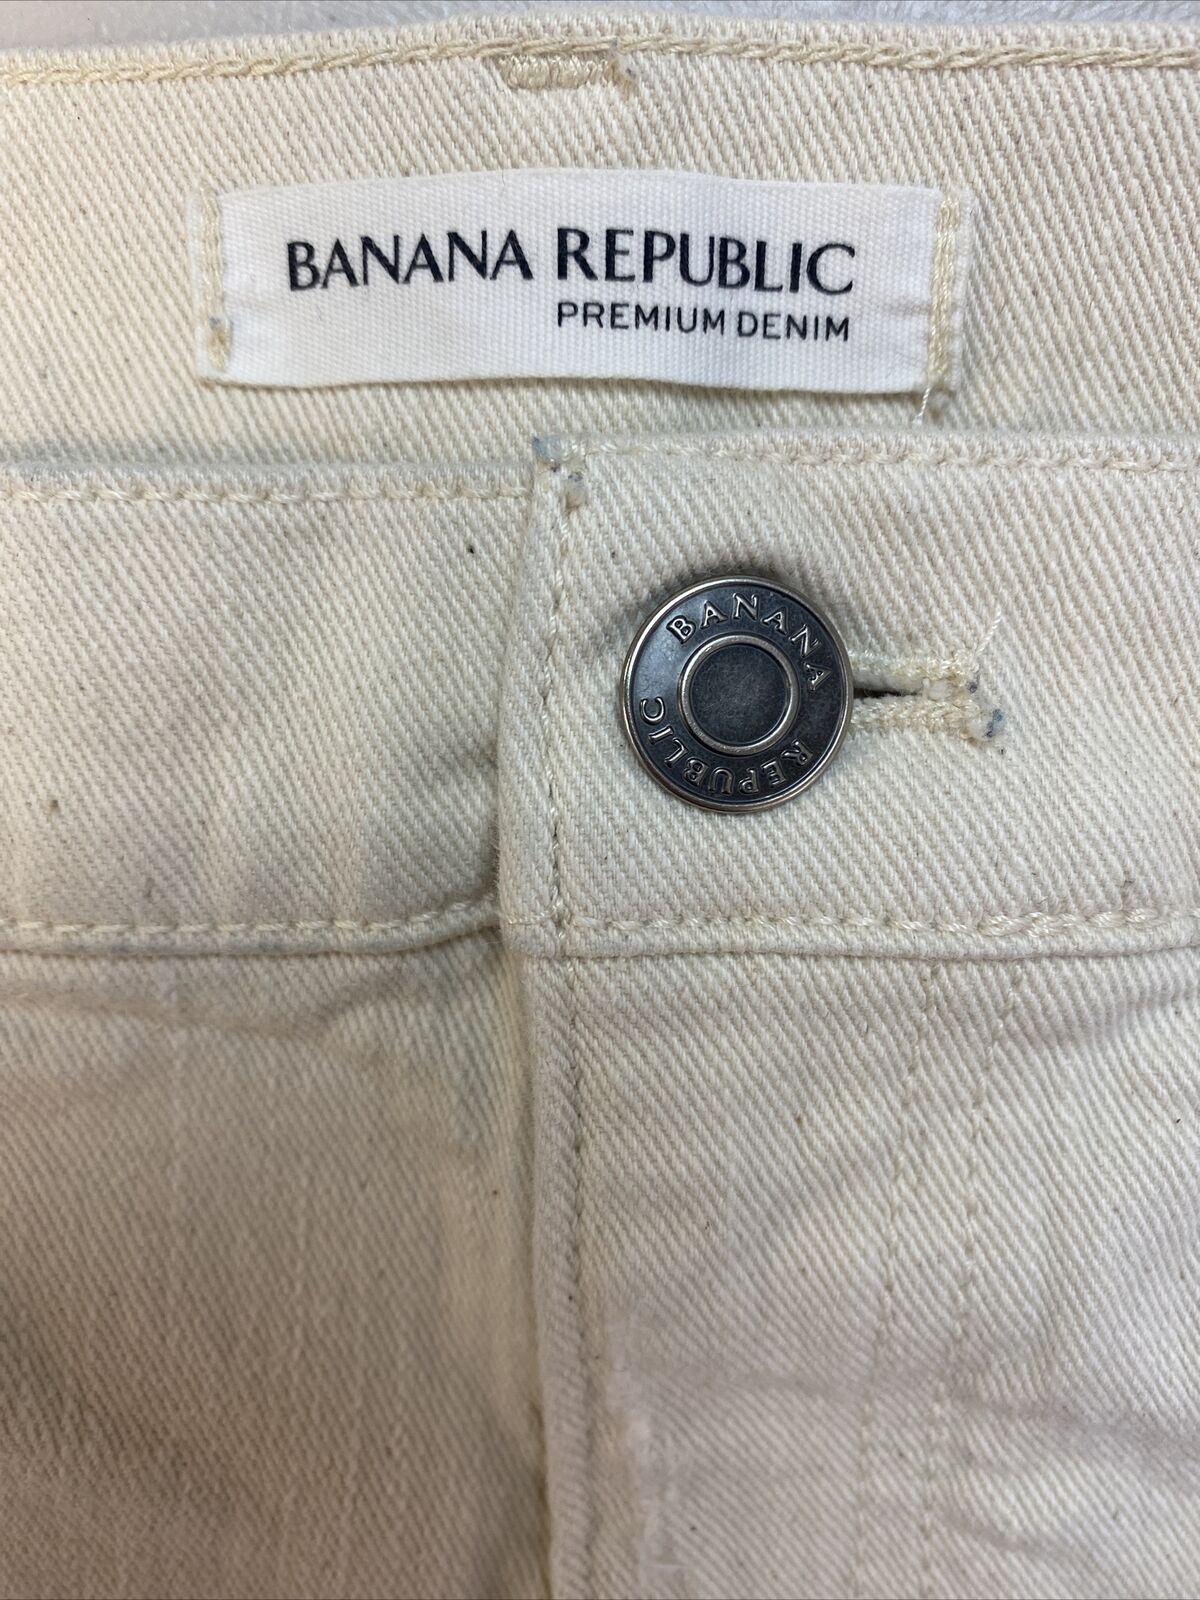 Banana Republic Women's Beige Premium Denim Jean Shorts Sz 30 L